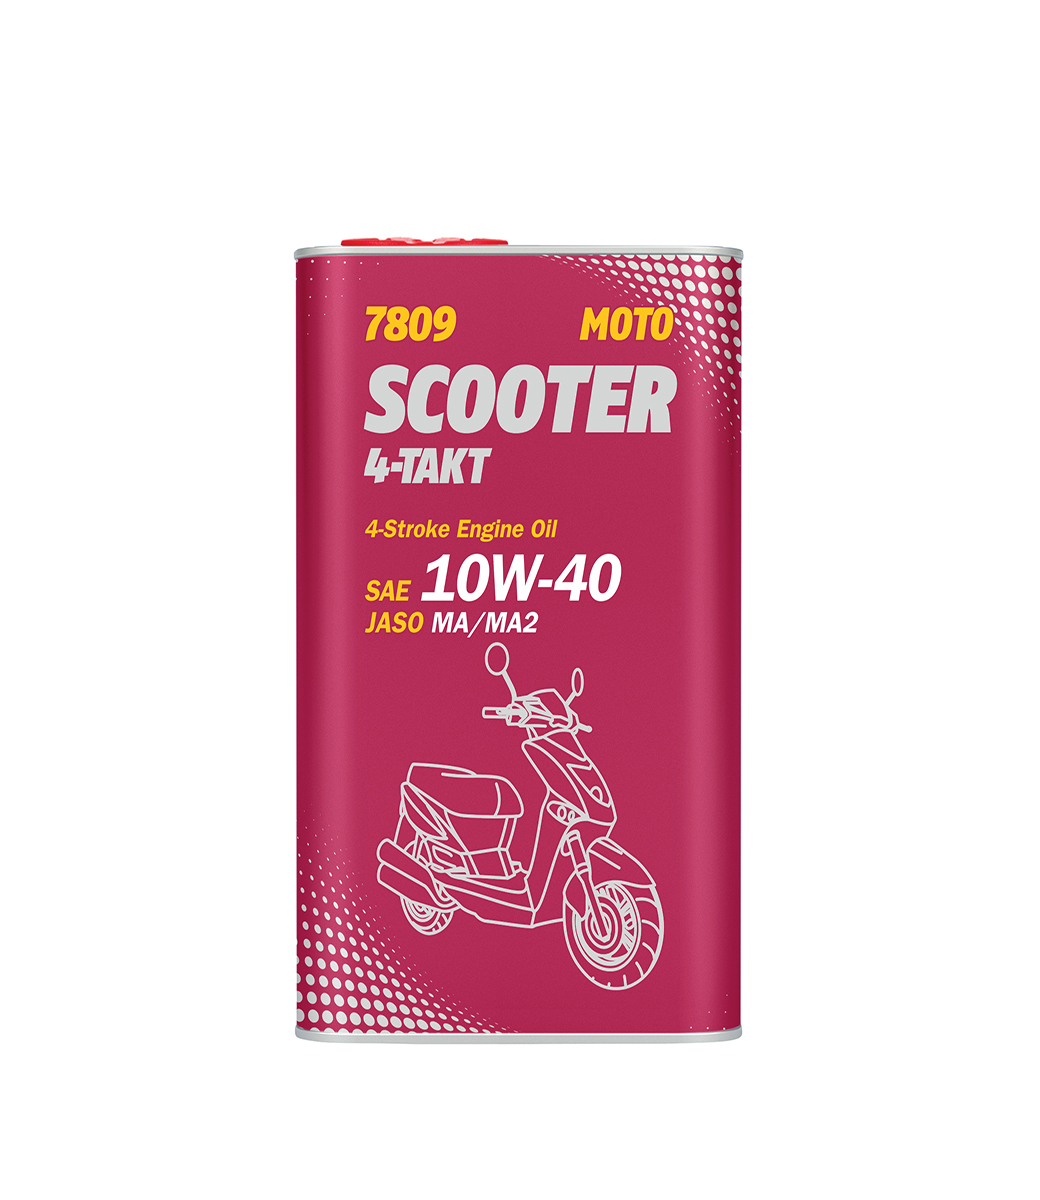 Scooter 4-Takt 10W-40